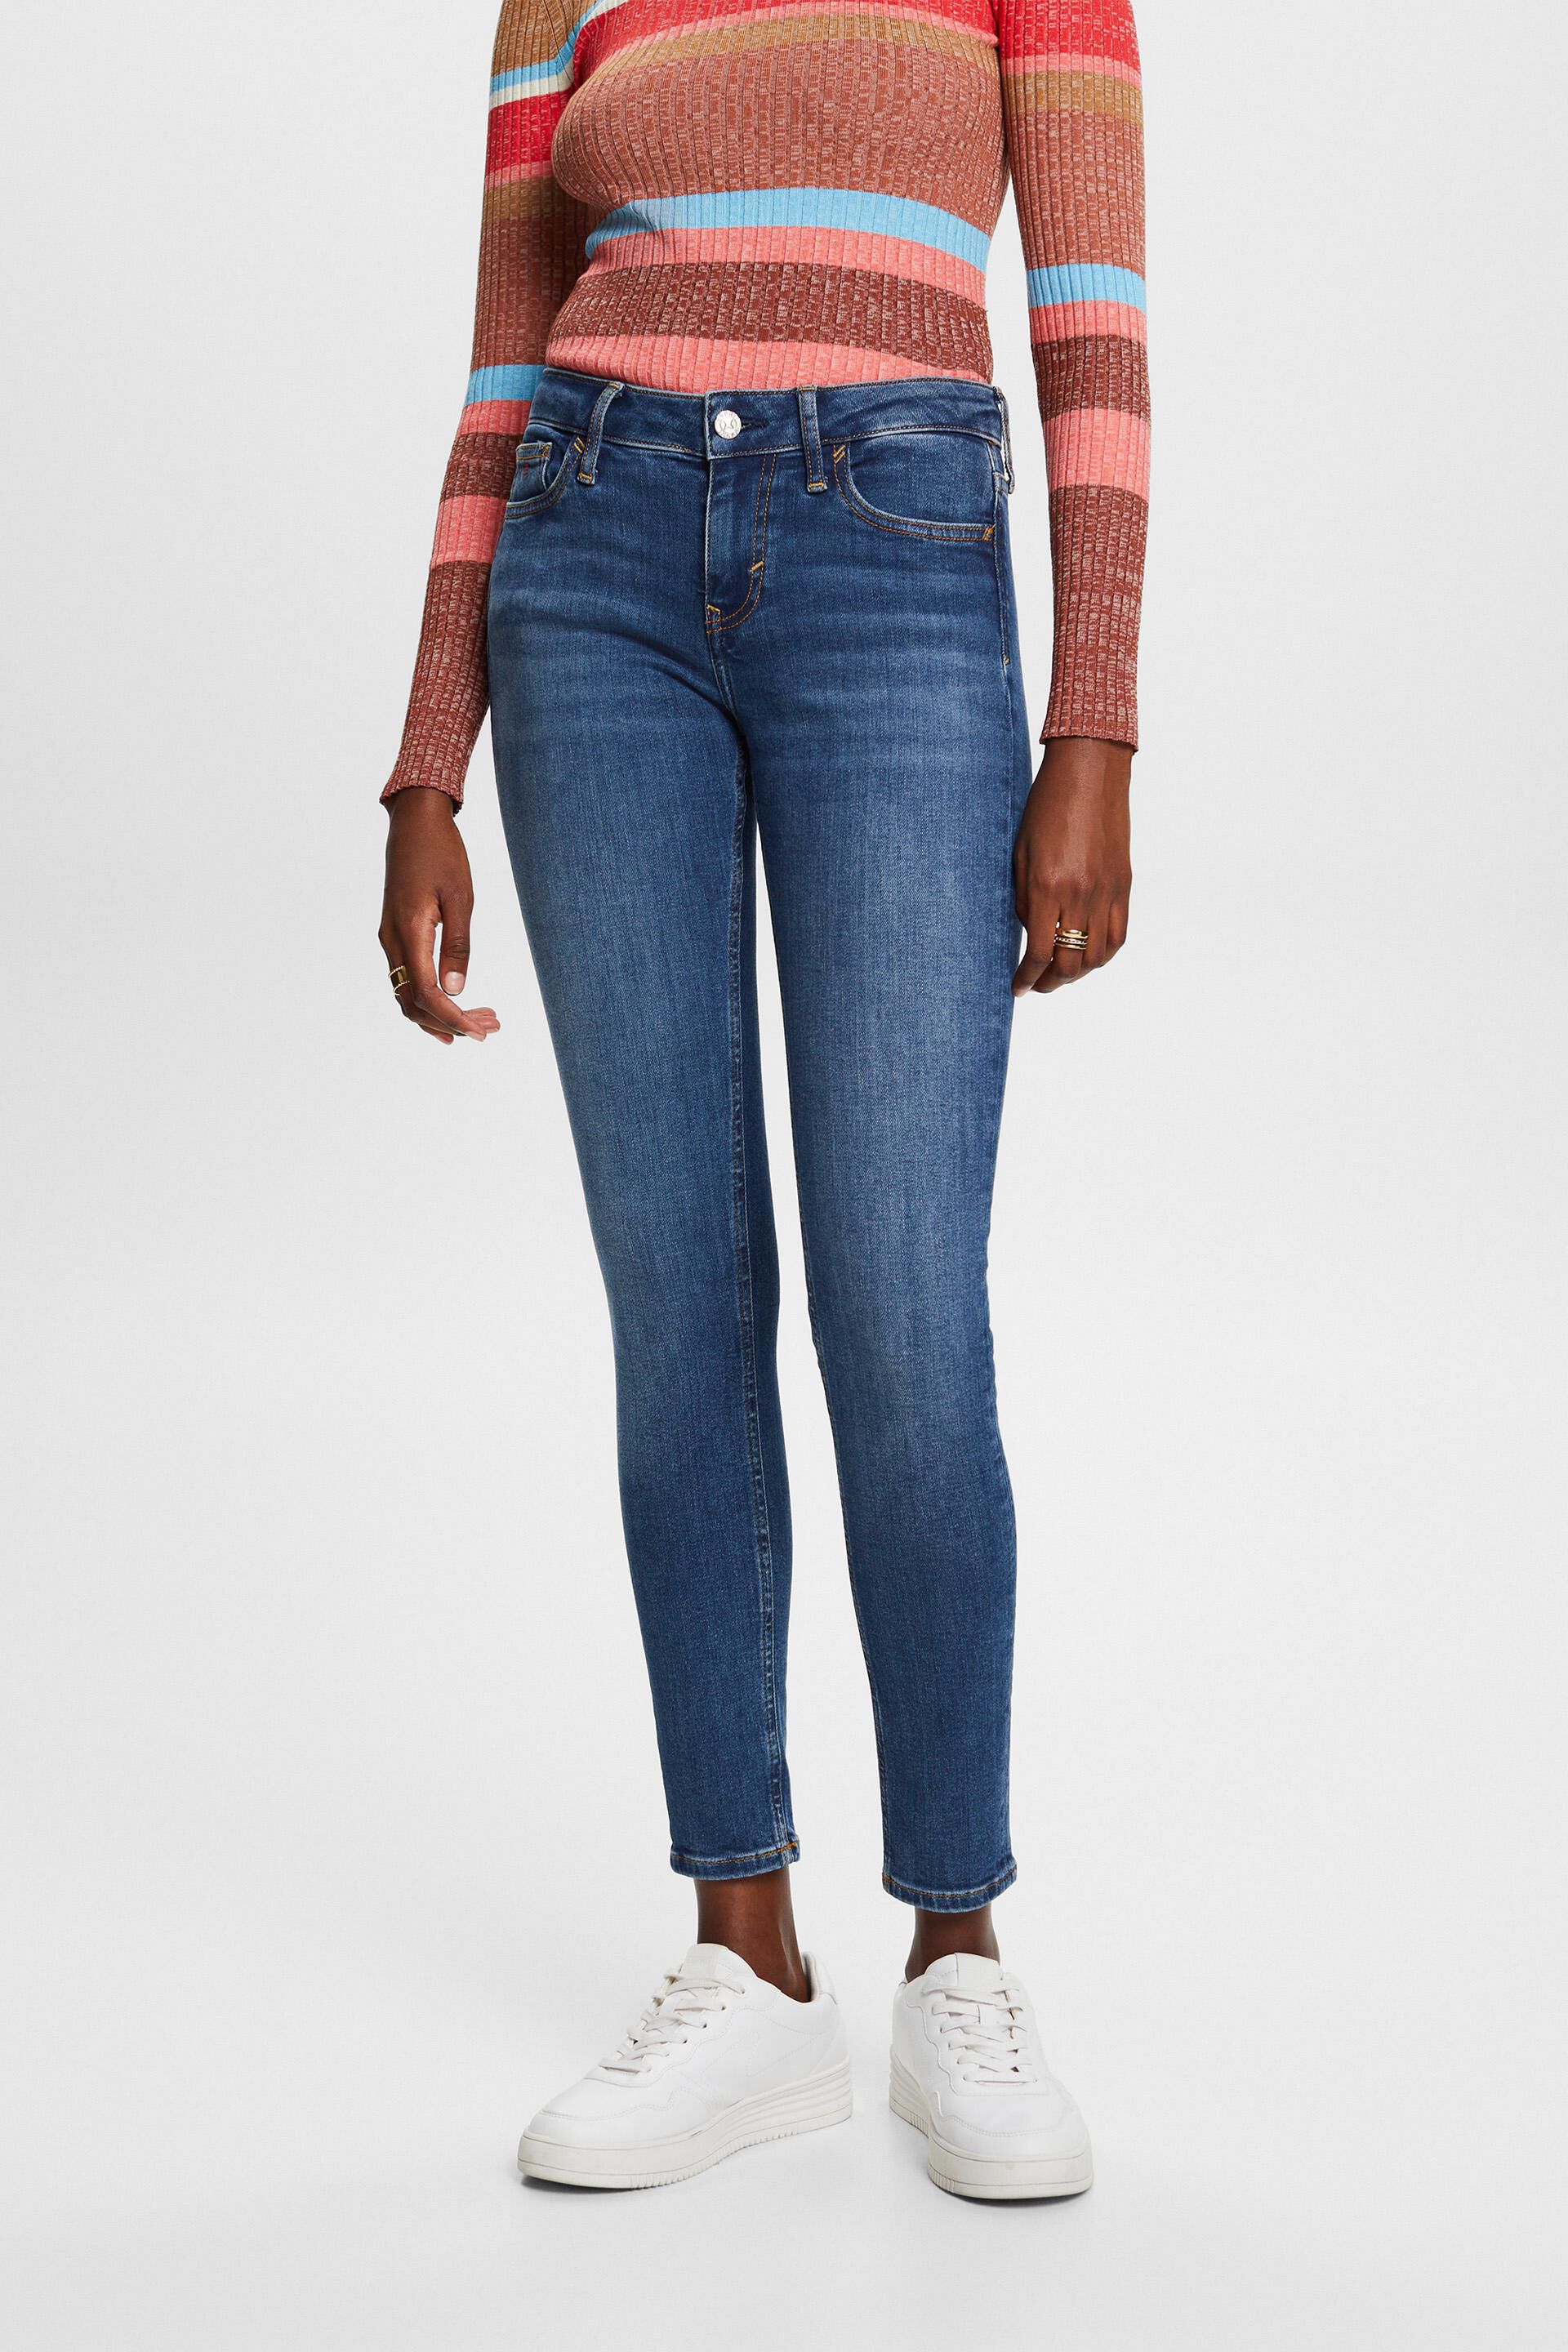 Esprit Premium skinny mid-rise jeans